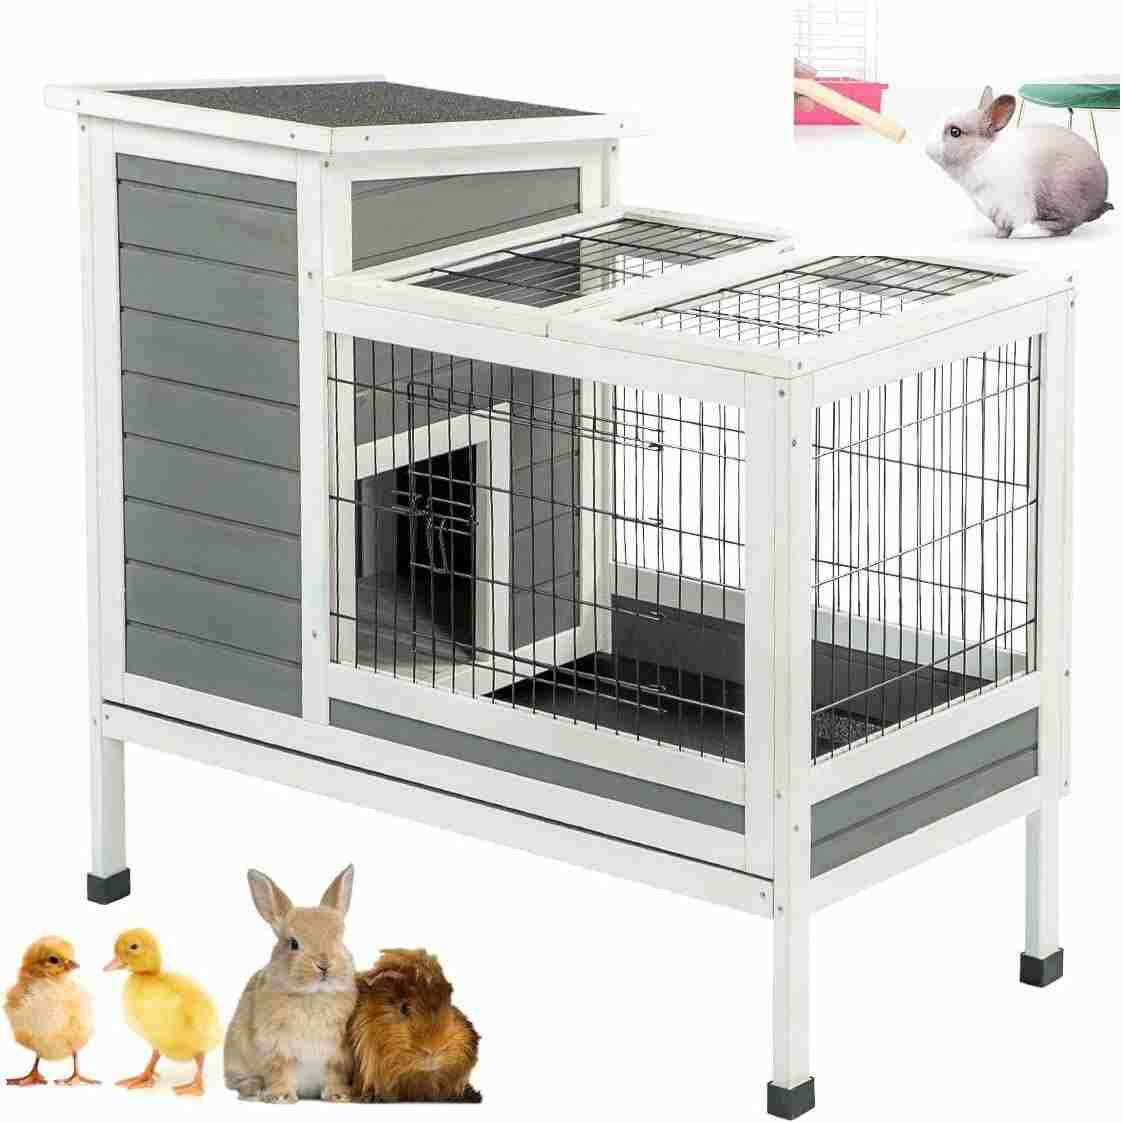 Aoxun 2 Story Rabbit Hutch OutdoorIndoor Bunny Cage